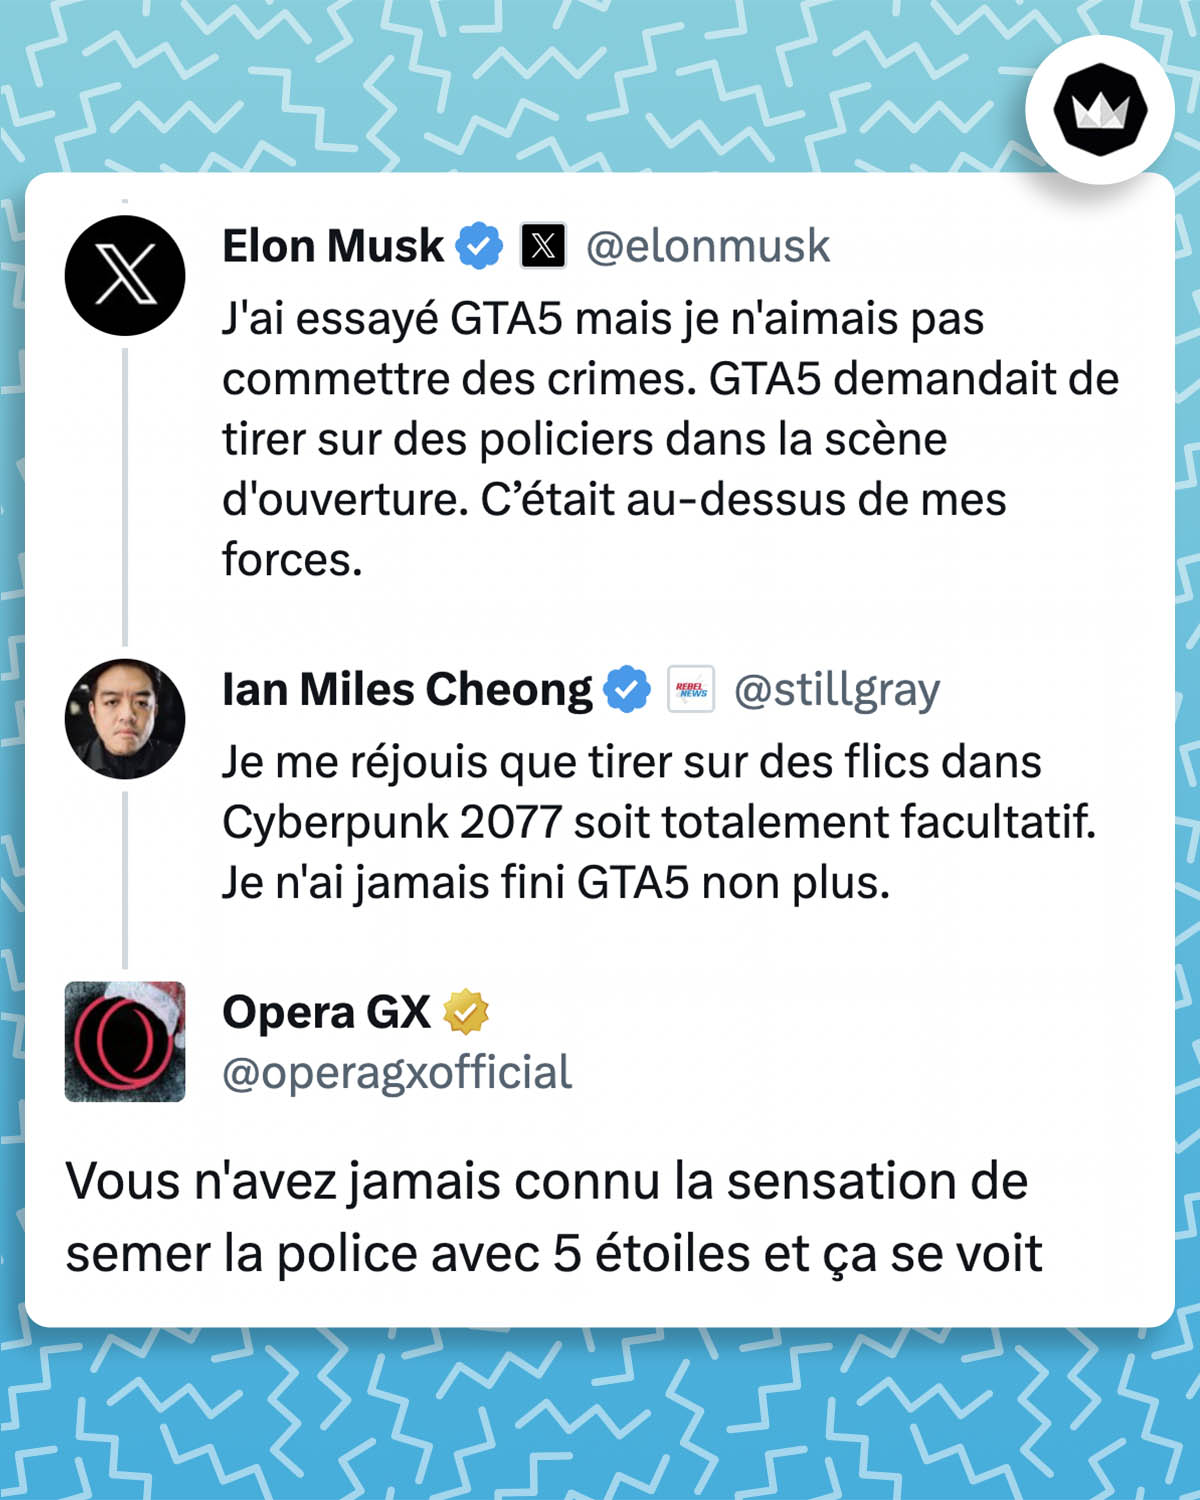 Elon Musk : J'ai essayé GTA5 mais je n'aimais pas commettre des crimes. GTA5 demandait de tirer sur des policiers dans la scène d'ouverture. C’était au-dessus de mes forces. Ian Miles Cheong : Je me réjouis que tirer sur des flics dans Cyberpunk 2077 soit totalement facultatif. Je n'ai jamais fini GTA5 non plus. Opera GX : Vous n'avez jamais connu la sensation de semer la police avec 5 étoiles et ça se voit